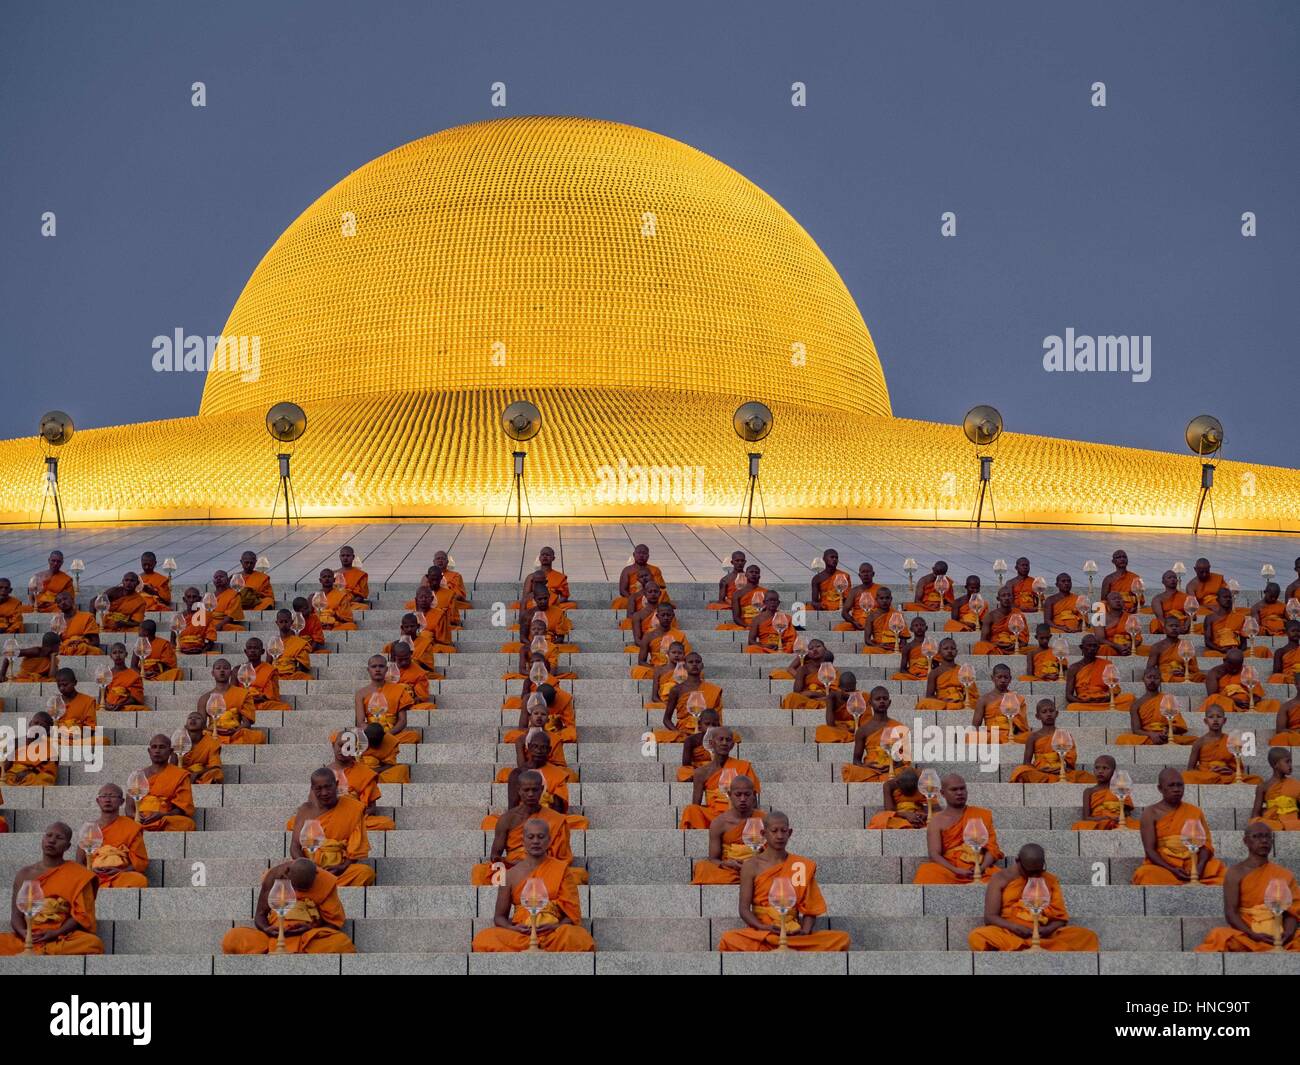 Khlong Luang, Pathum Thani, Thailand. 11. Februar 2017. Buddhistische Mönche beten während der Makha Bucha-Tag-Service im Wat Phra Dhammakaya auf ihren Plätzen auf der Pagode. Makha Bucha-Tag ist ein Feiertag in Kambodscha, Laos, Myanmar und Thailand. Viele Menschen gehen zum Tempel, um Verdienst ausgerichteten Tätigkeiten auf Makha Bucha-Tag, ausüben, welche vier wichtige Ereignisse im Buddhismus markiert: 1.250 Schüler kamen, den Buddha zu sehen, ohne beschworen wird, alle von ihnen waren Arhantas, oder, die erleuchtet und alle waren vom Buddha selbst ordiniert. Bildnachweis: ZUMA Press, Inc./Alamy Live-Nachrichten Stockfoto